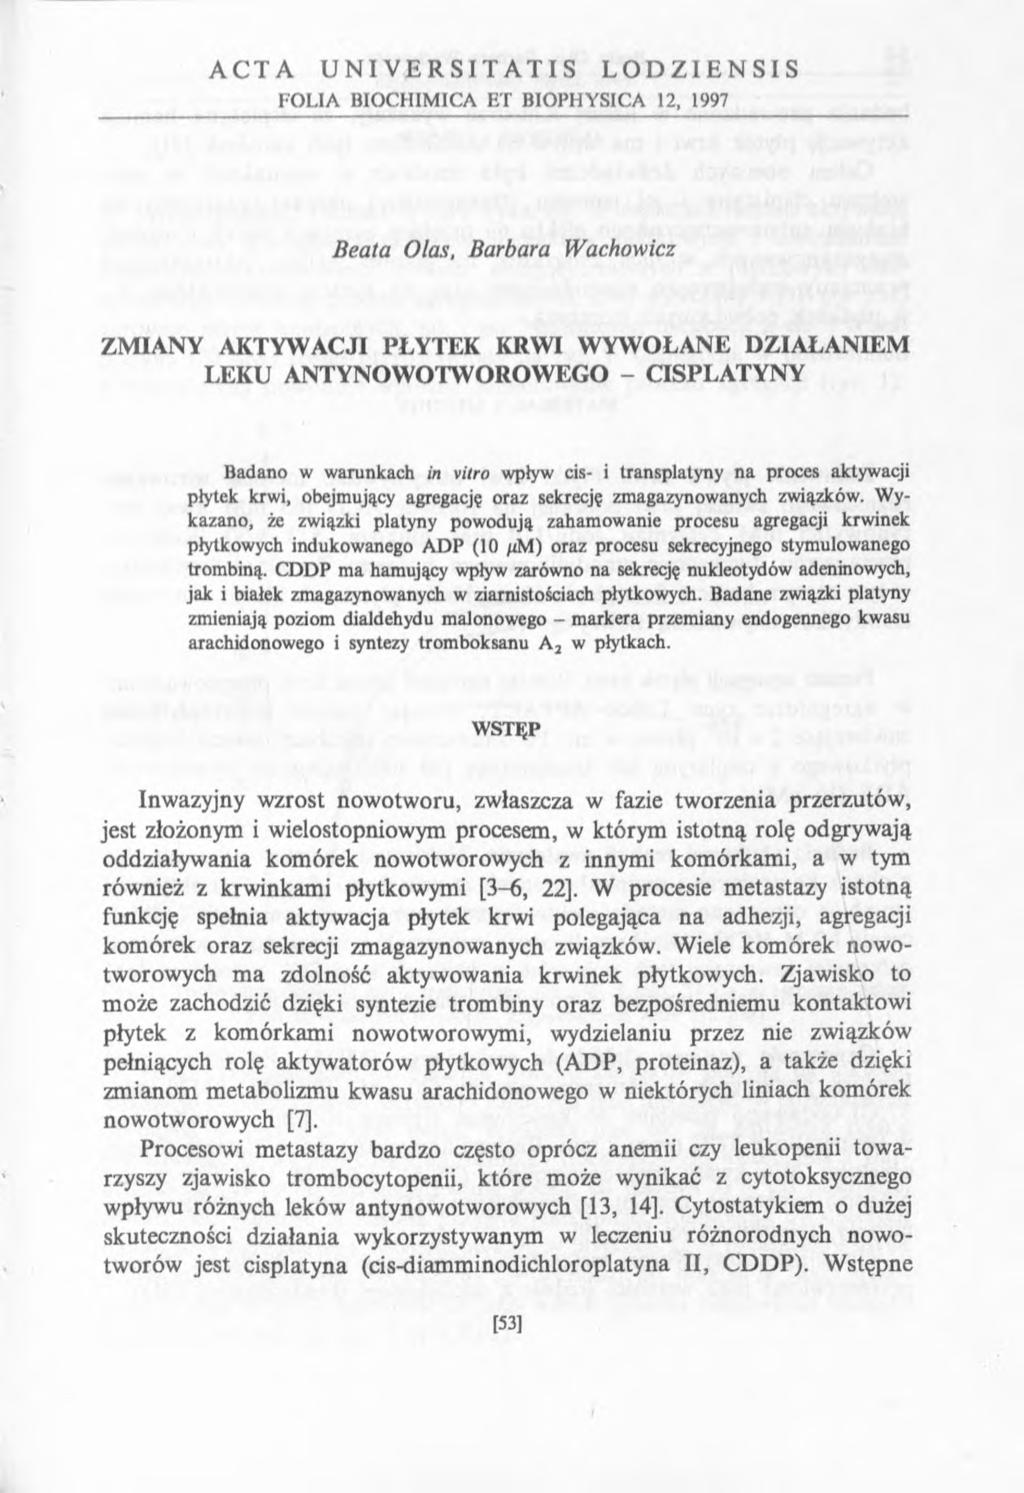 ACTA UNIVERSIT ATIS LODZIENSIS FOLIA BIOCHIMICA ET BIOPHYSICA 12, 1997 Beata Olas, Barbara Wachowicz ZMIANY AKTYWACJI PŁYTEK KRWI WYWOŁANE DZIAŁANIEM LEKU ANTYNOWOTWOROWEGO - CISPLATYNY Badano w